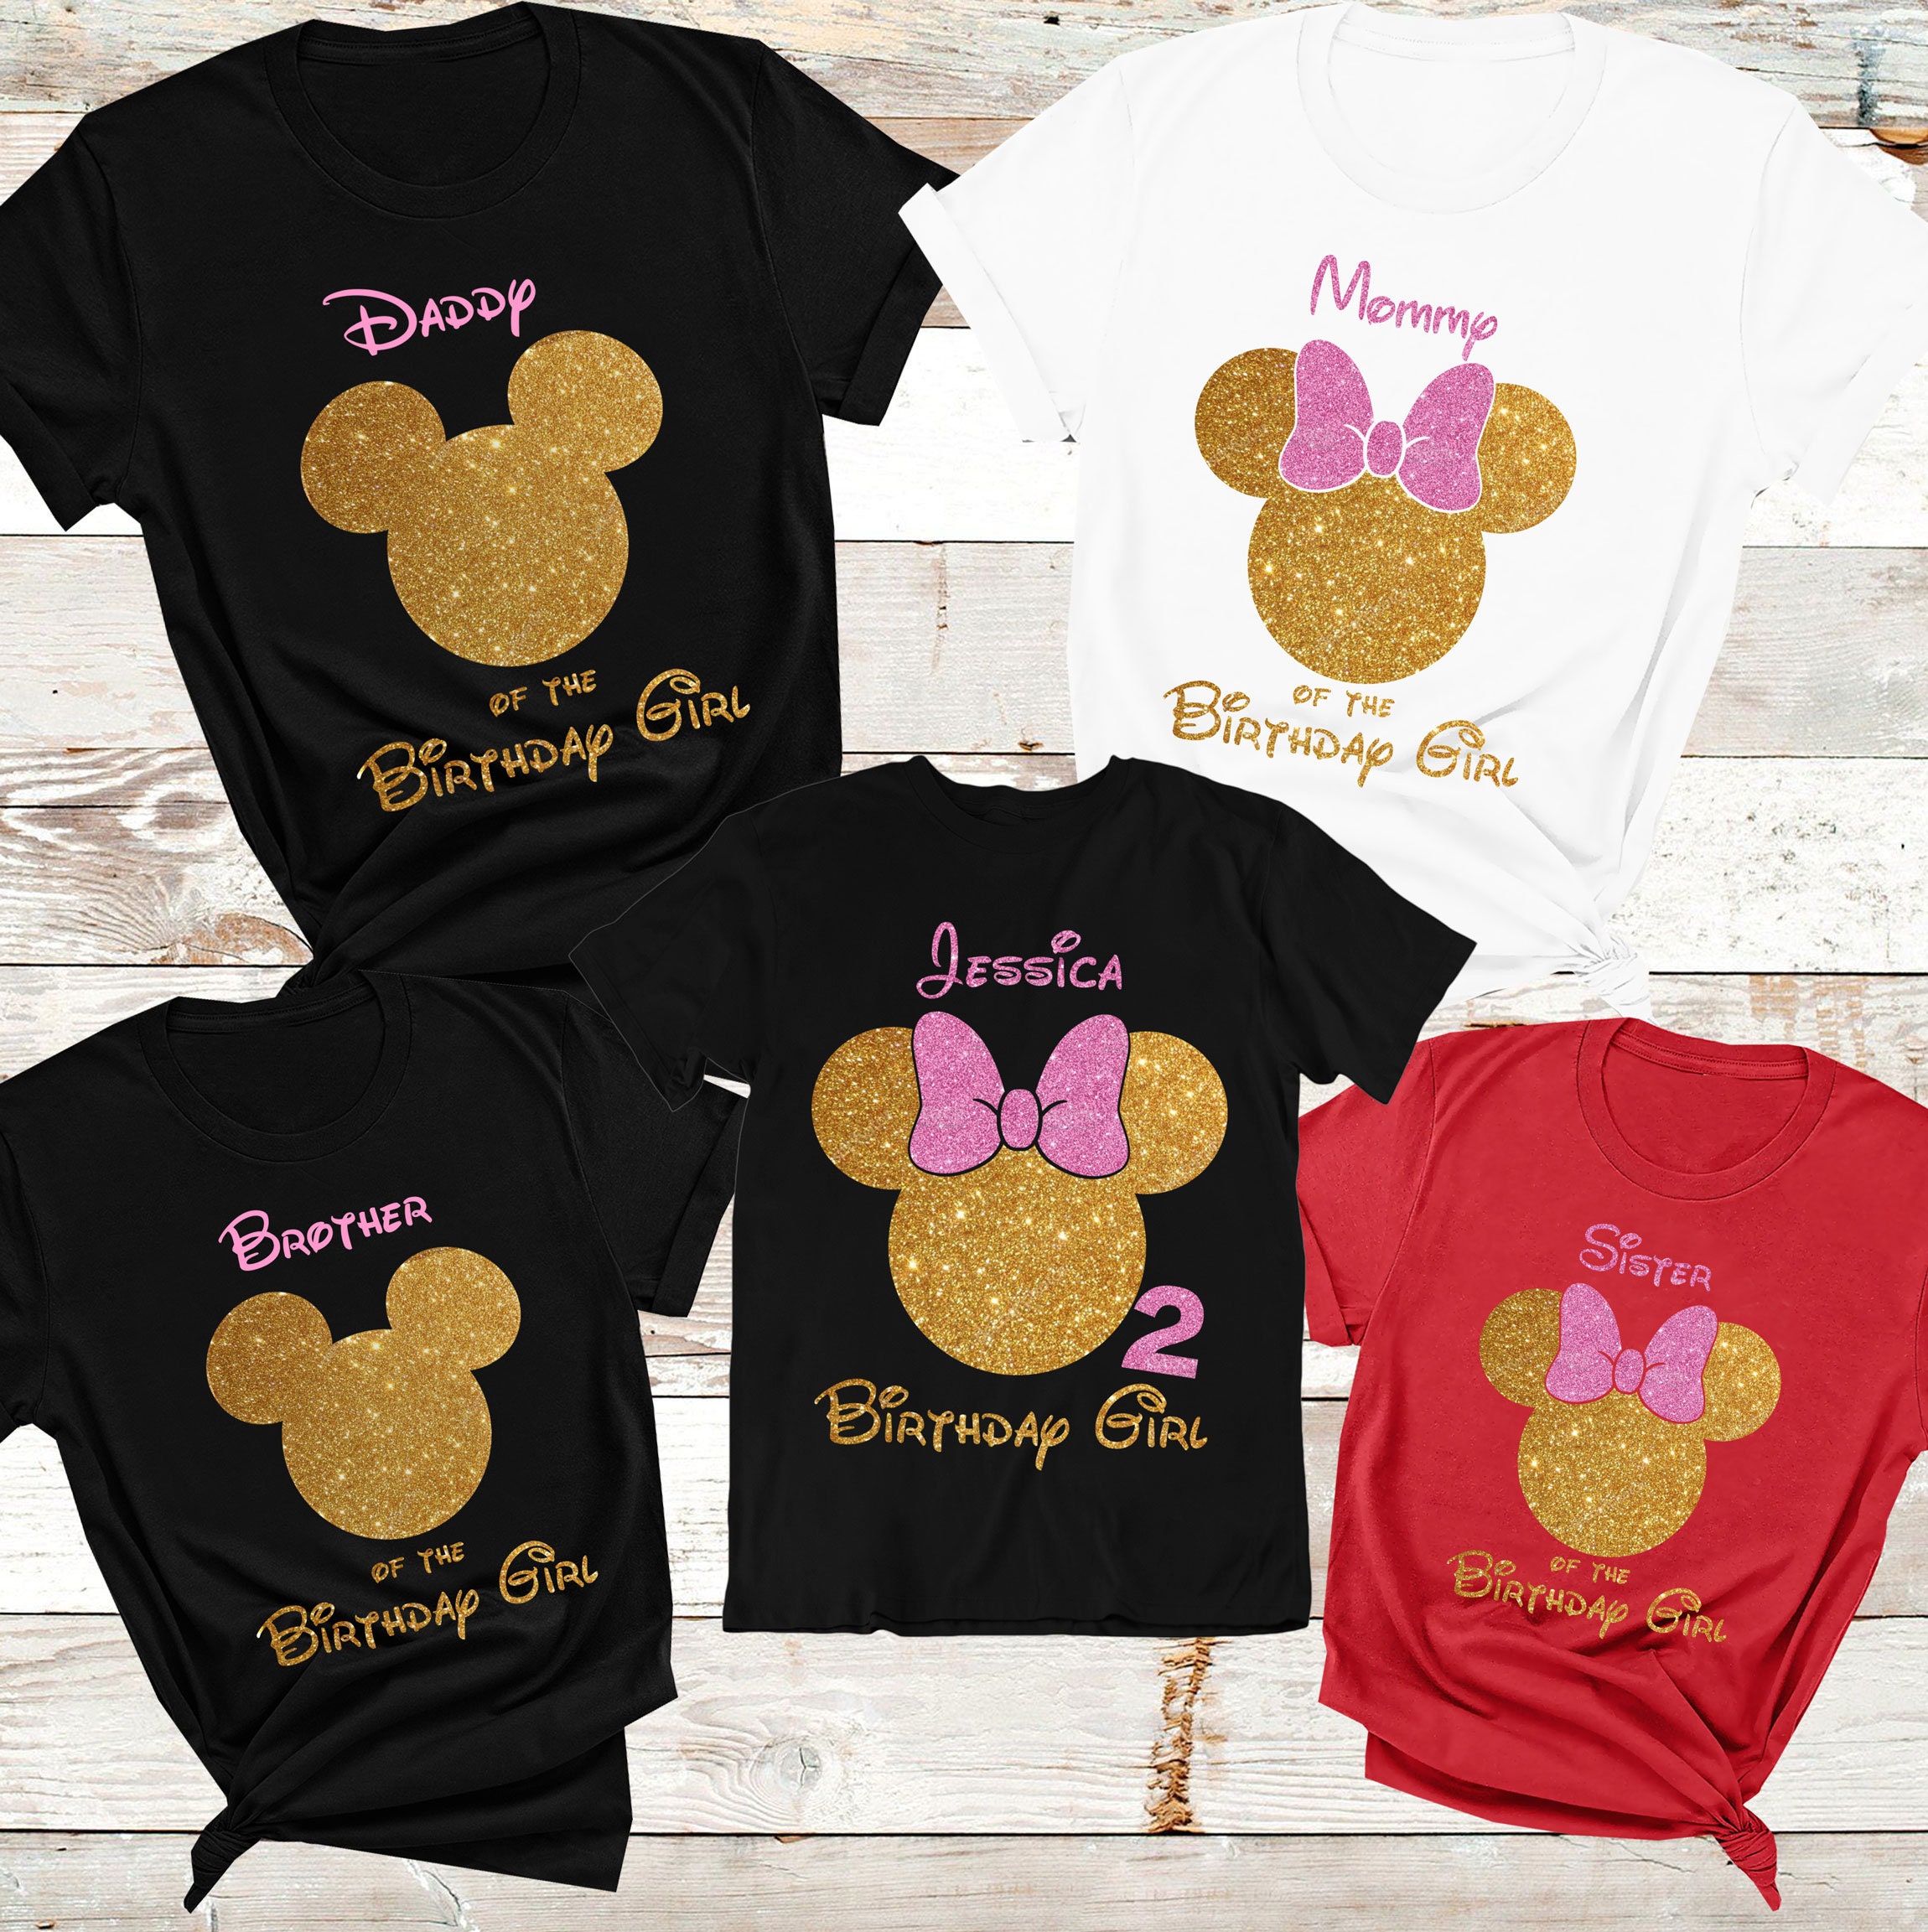 Minnie Mouse Damen T Shirt von Hangowear XL, € 20,- (8700 Leoben